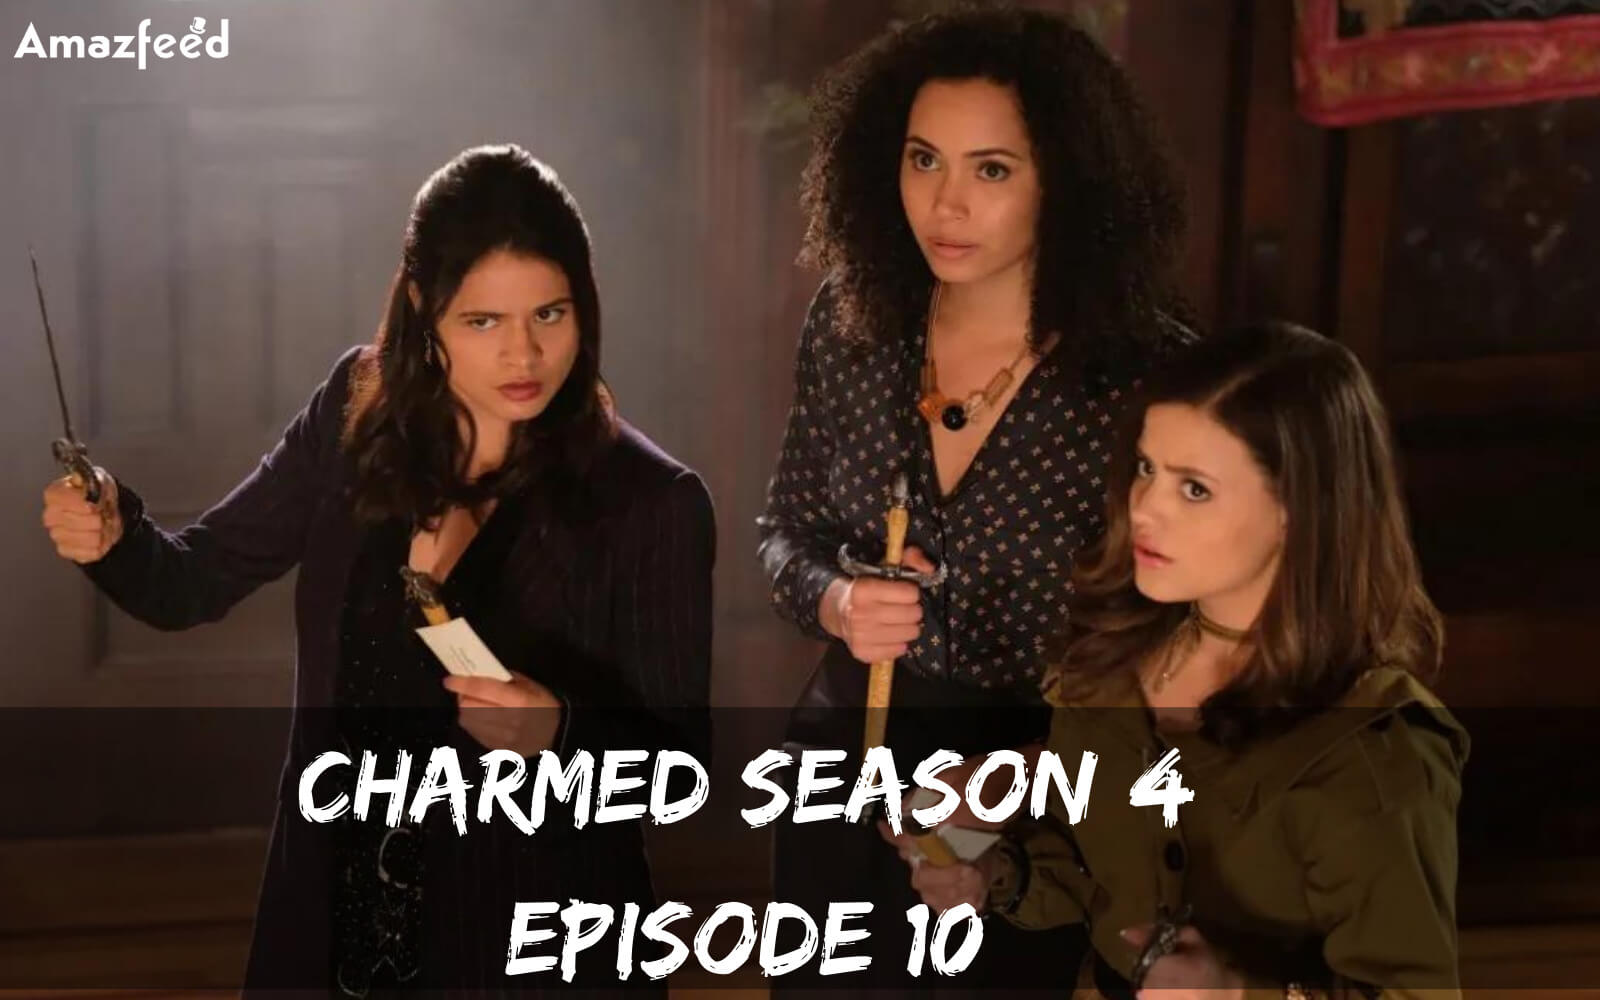 Charmed Season 4 Episode 10 release date